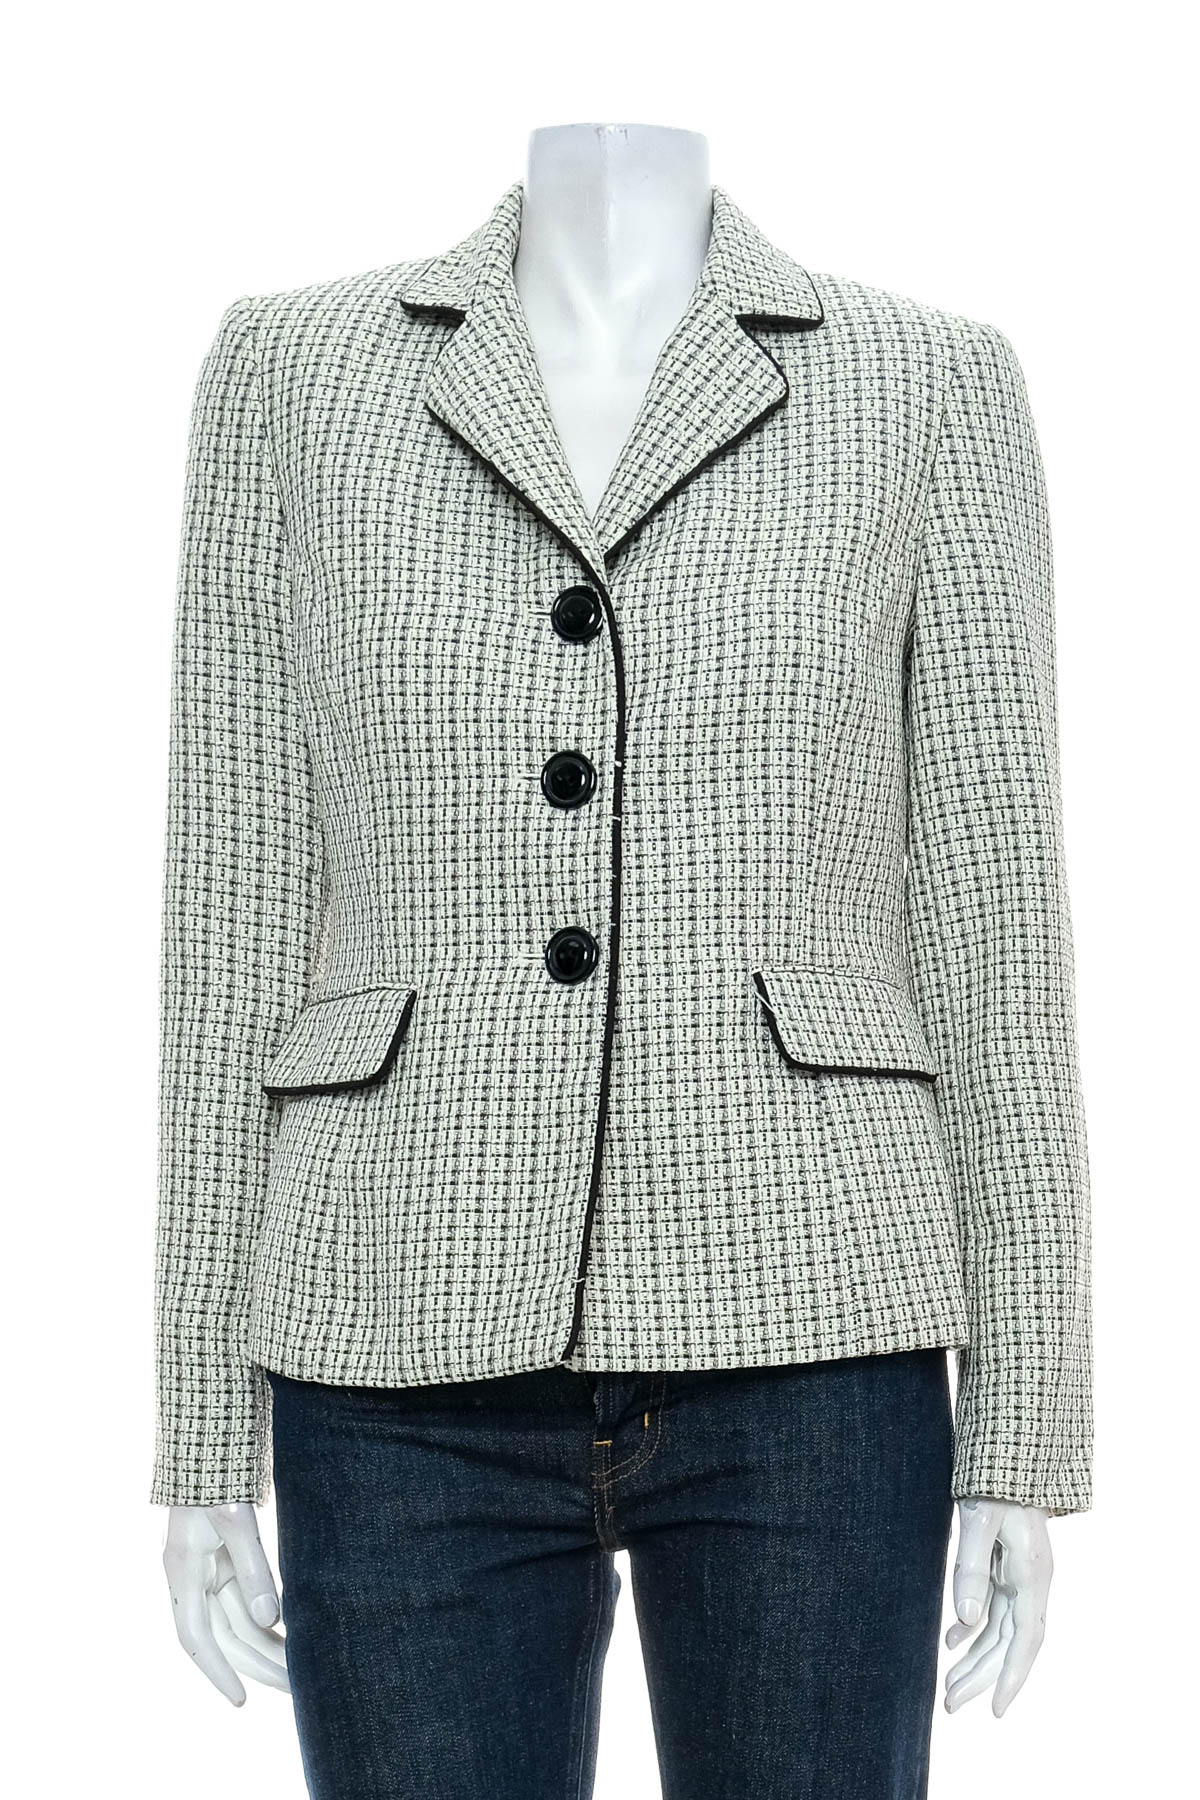 Women's blazer - Le Suit Petite - 0